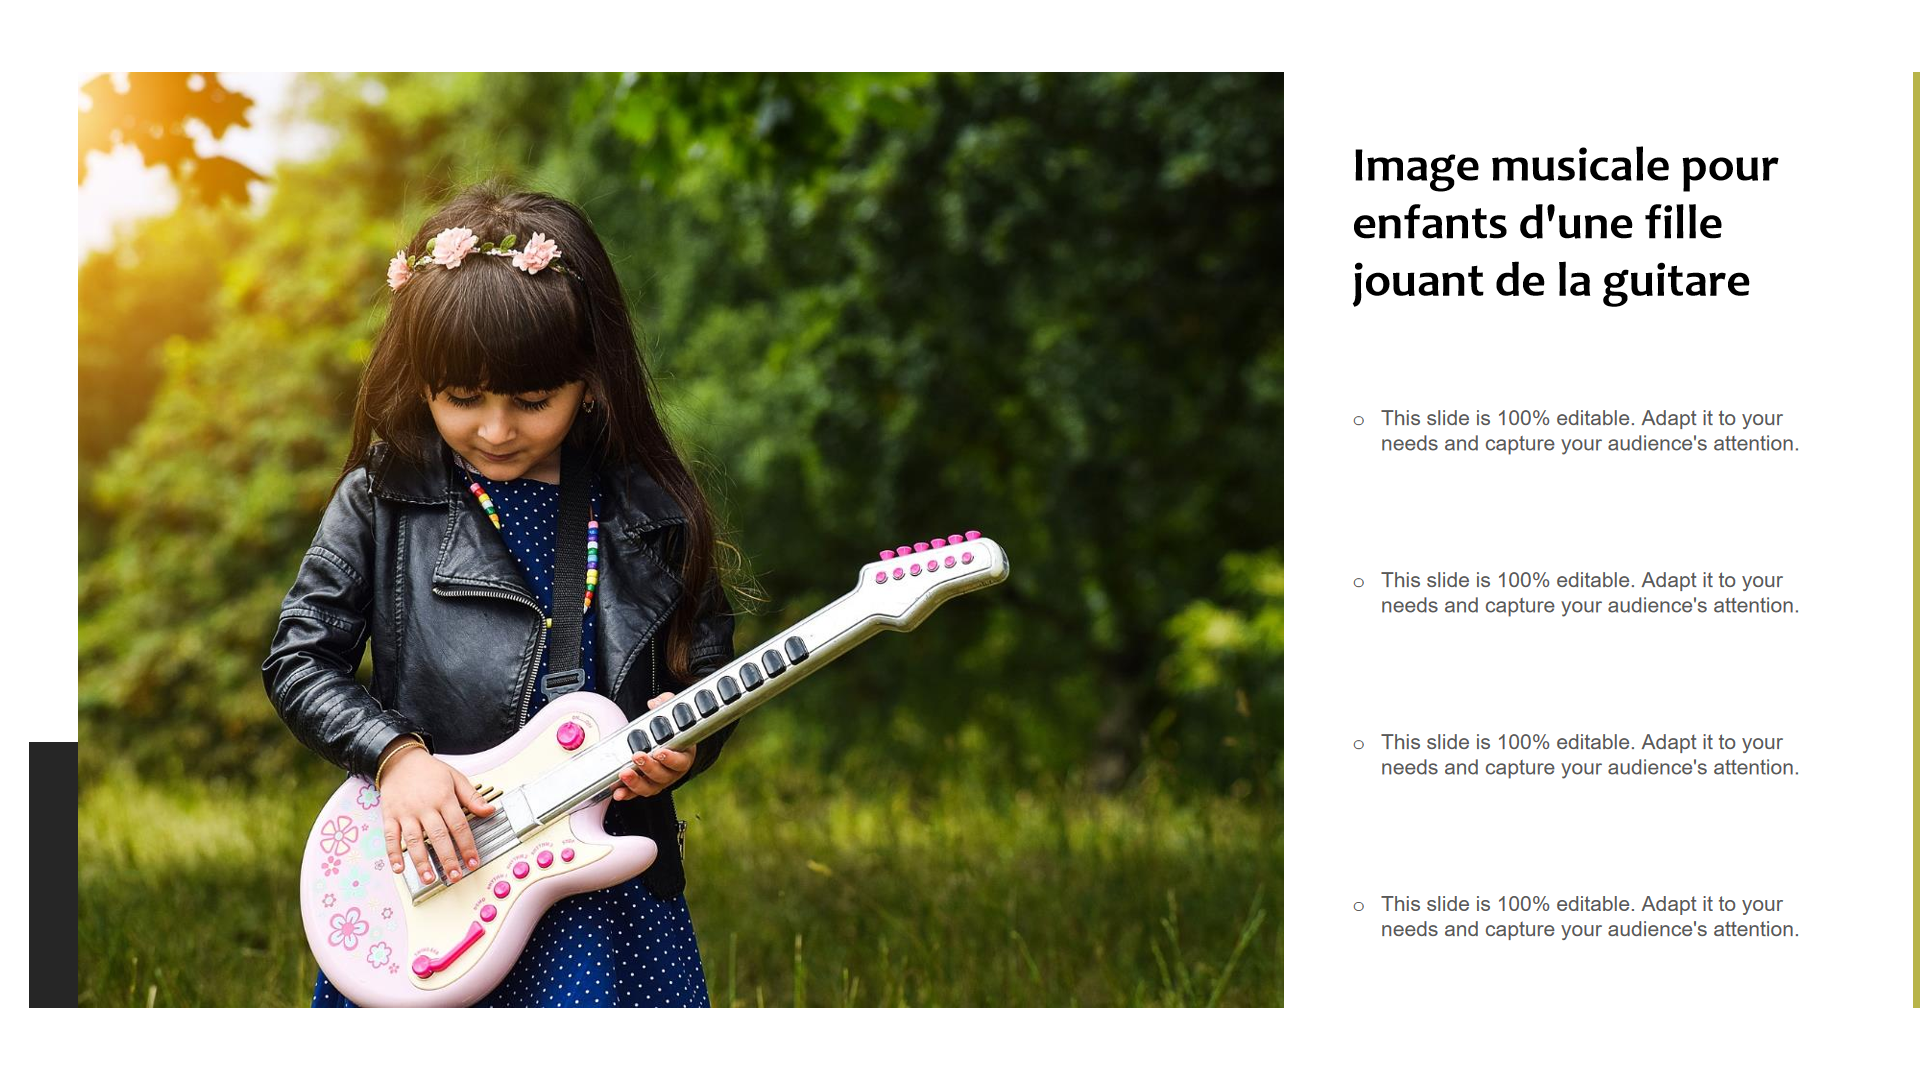 Image musicale pour enfants d'une fille jouant de la guitare